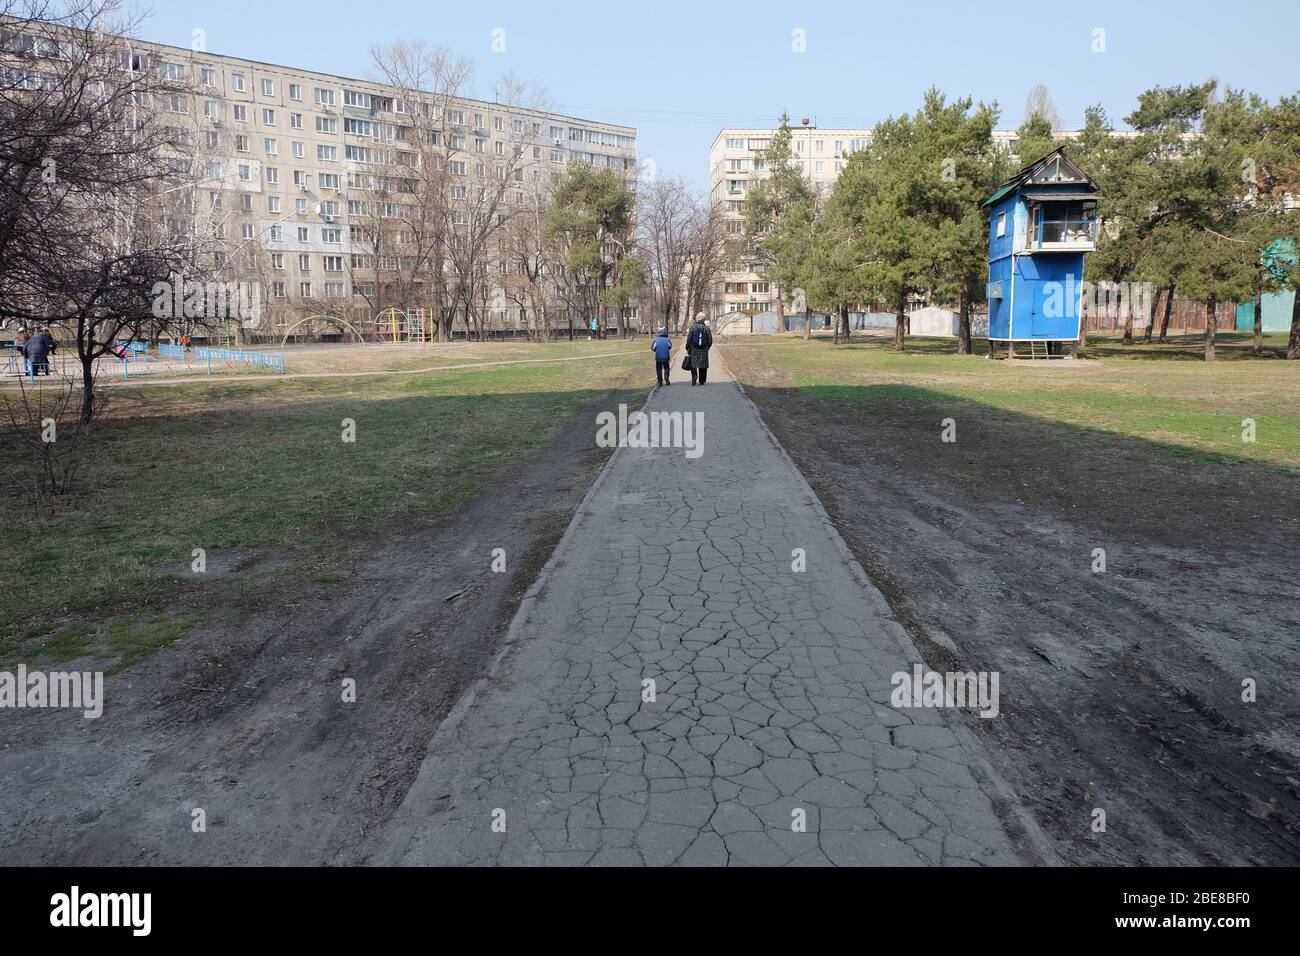 Une route sèche et sèche avec femme et petit garçon, debout sur la fin de l'ombre, créée par le soleil. Bâtiments ukrainiens typiques autour dans la capitale de Banque D'Images